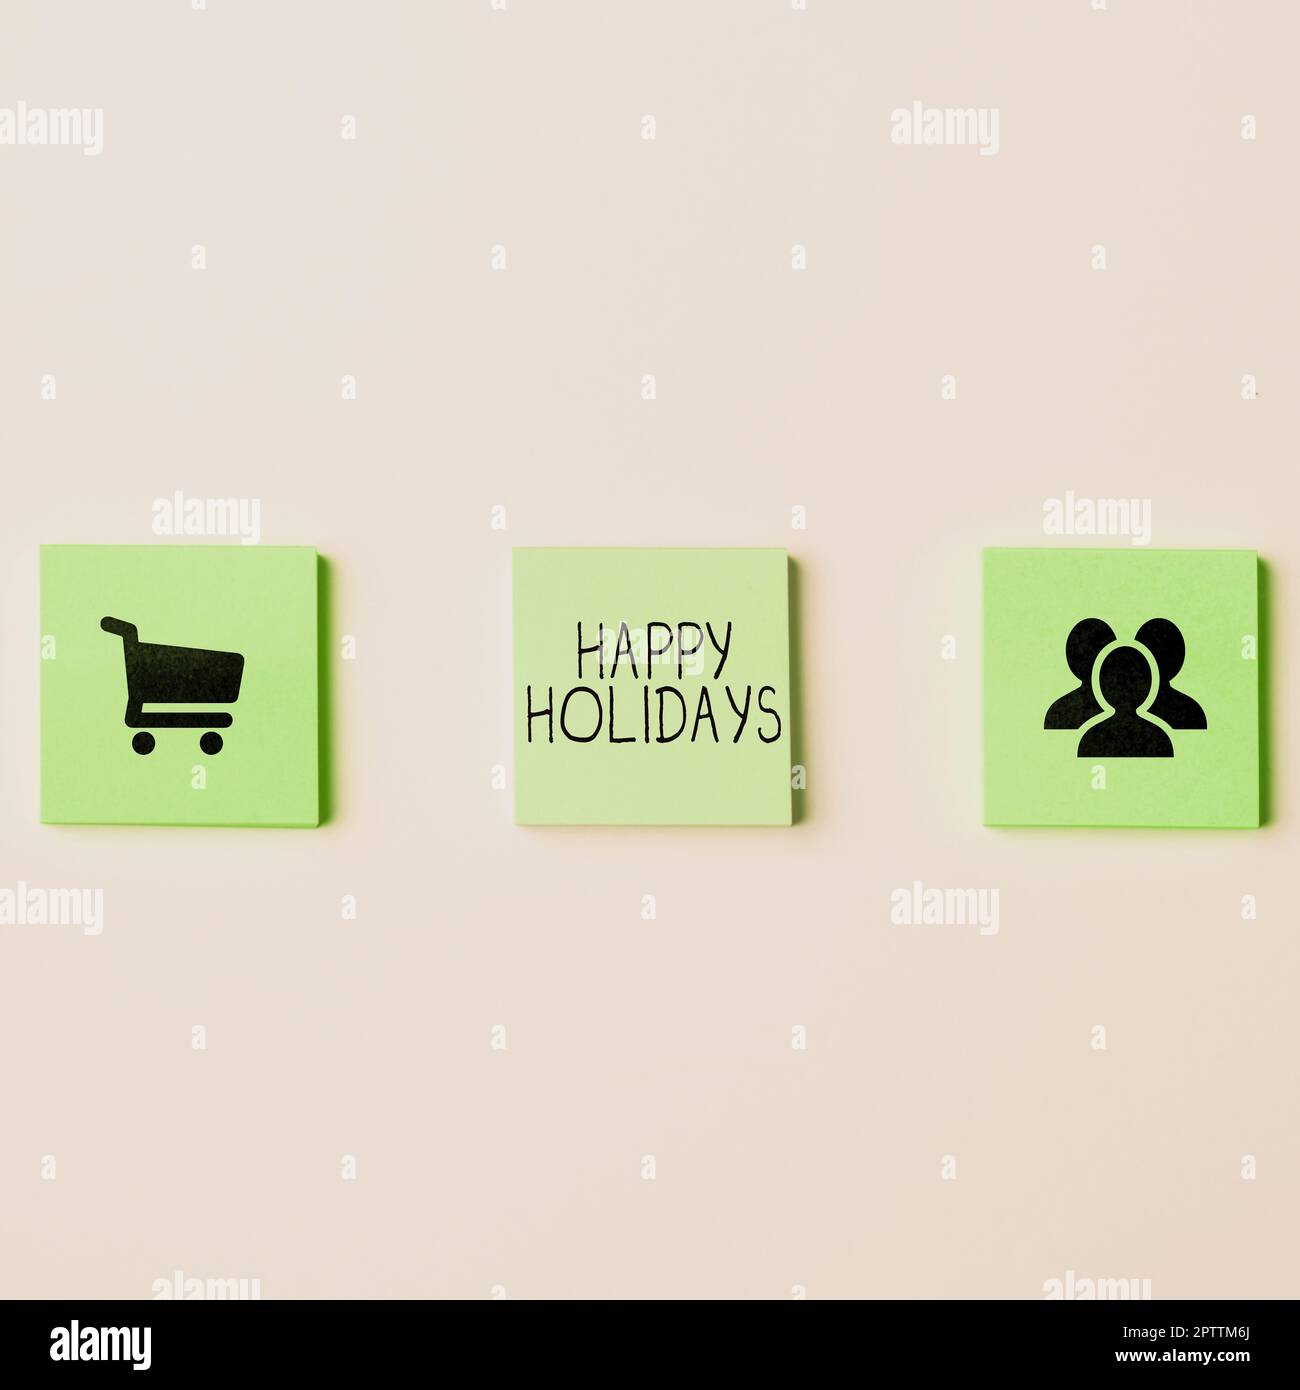 Légende de texte présentant Happy Holidays, Business concept salutation utilisé pour reconnaître la célébration de nombreuses vacances Banque D'Images